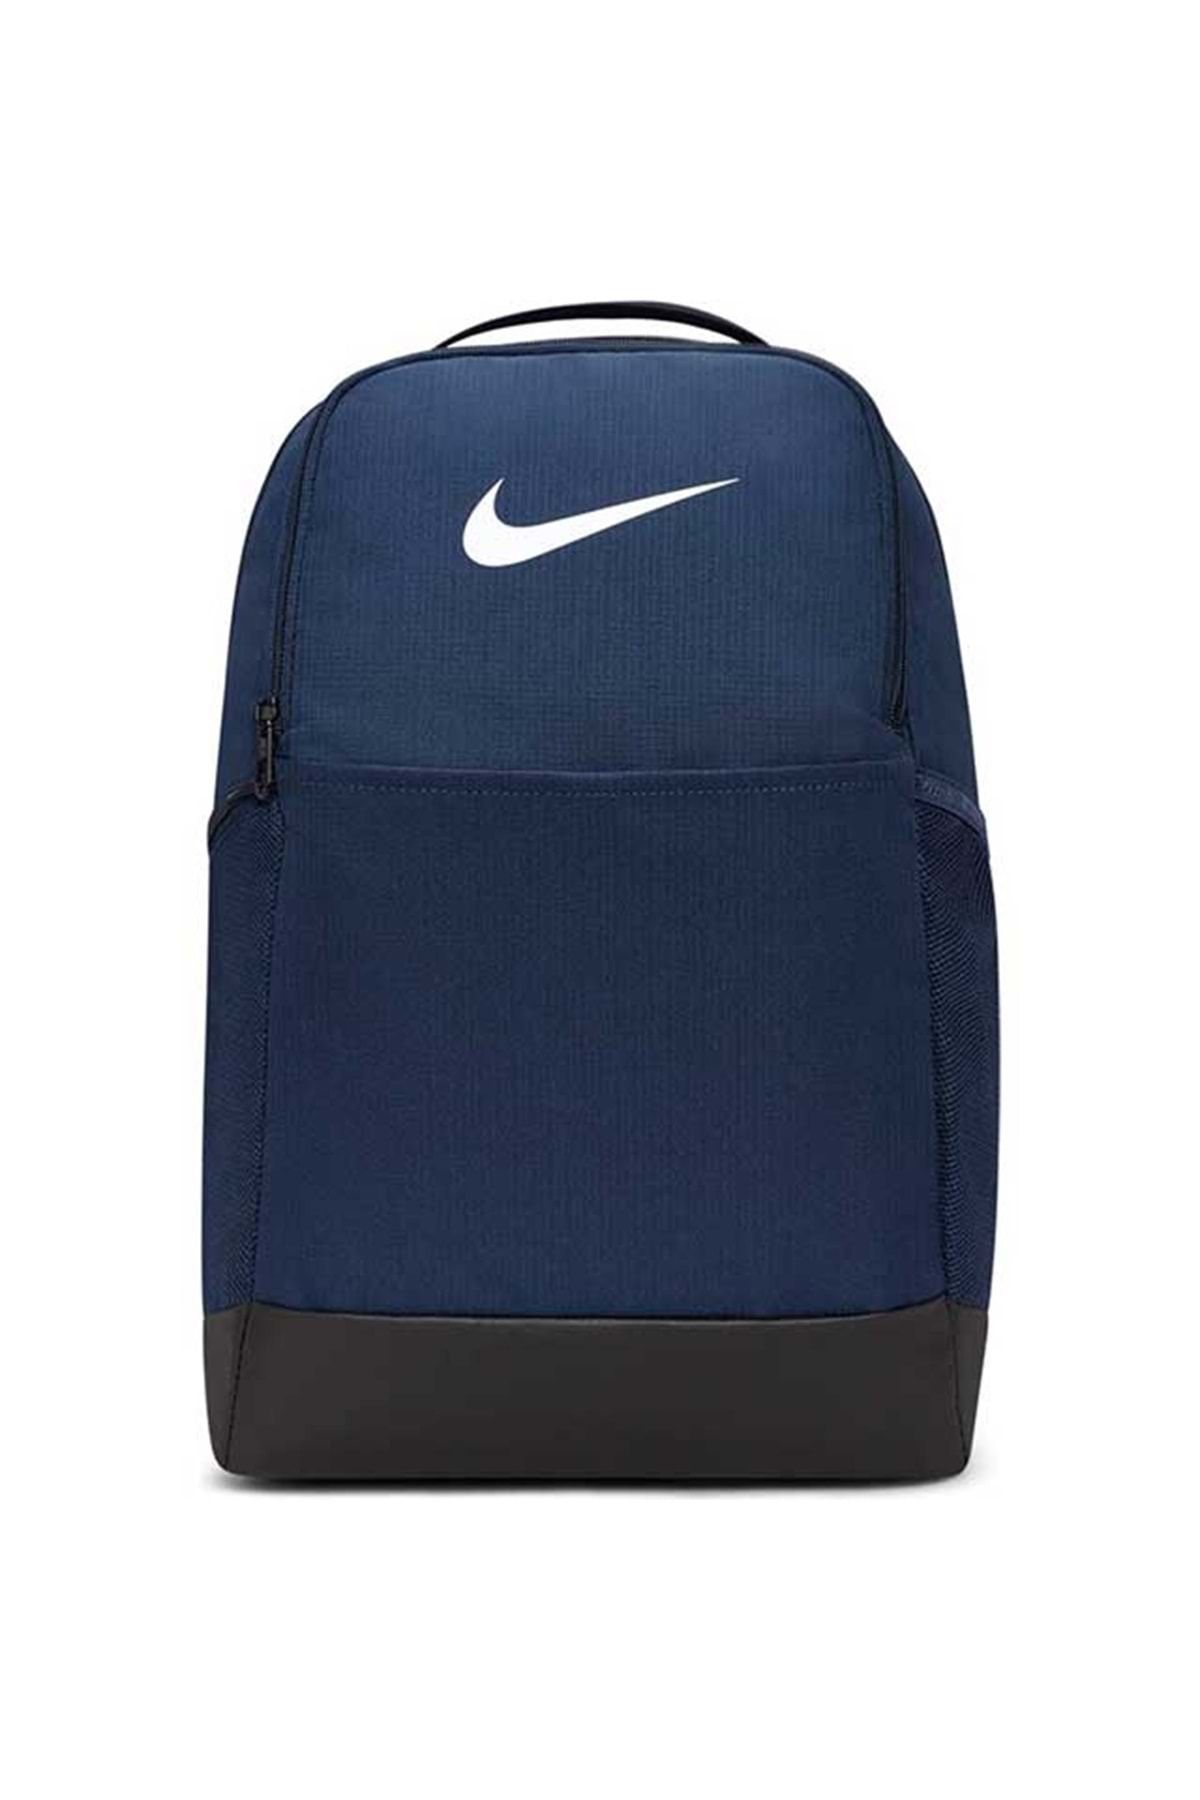 Nike Brasilia 9.5 24l Dh7709- Backpack Sırt Çantası Unisex Sırt Çantası  Lacivert Fiyatı, Yorumları - Trendyol